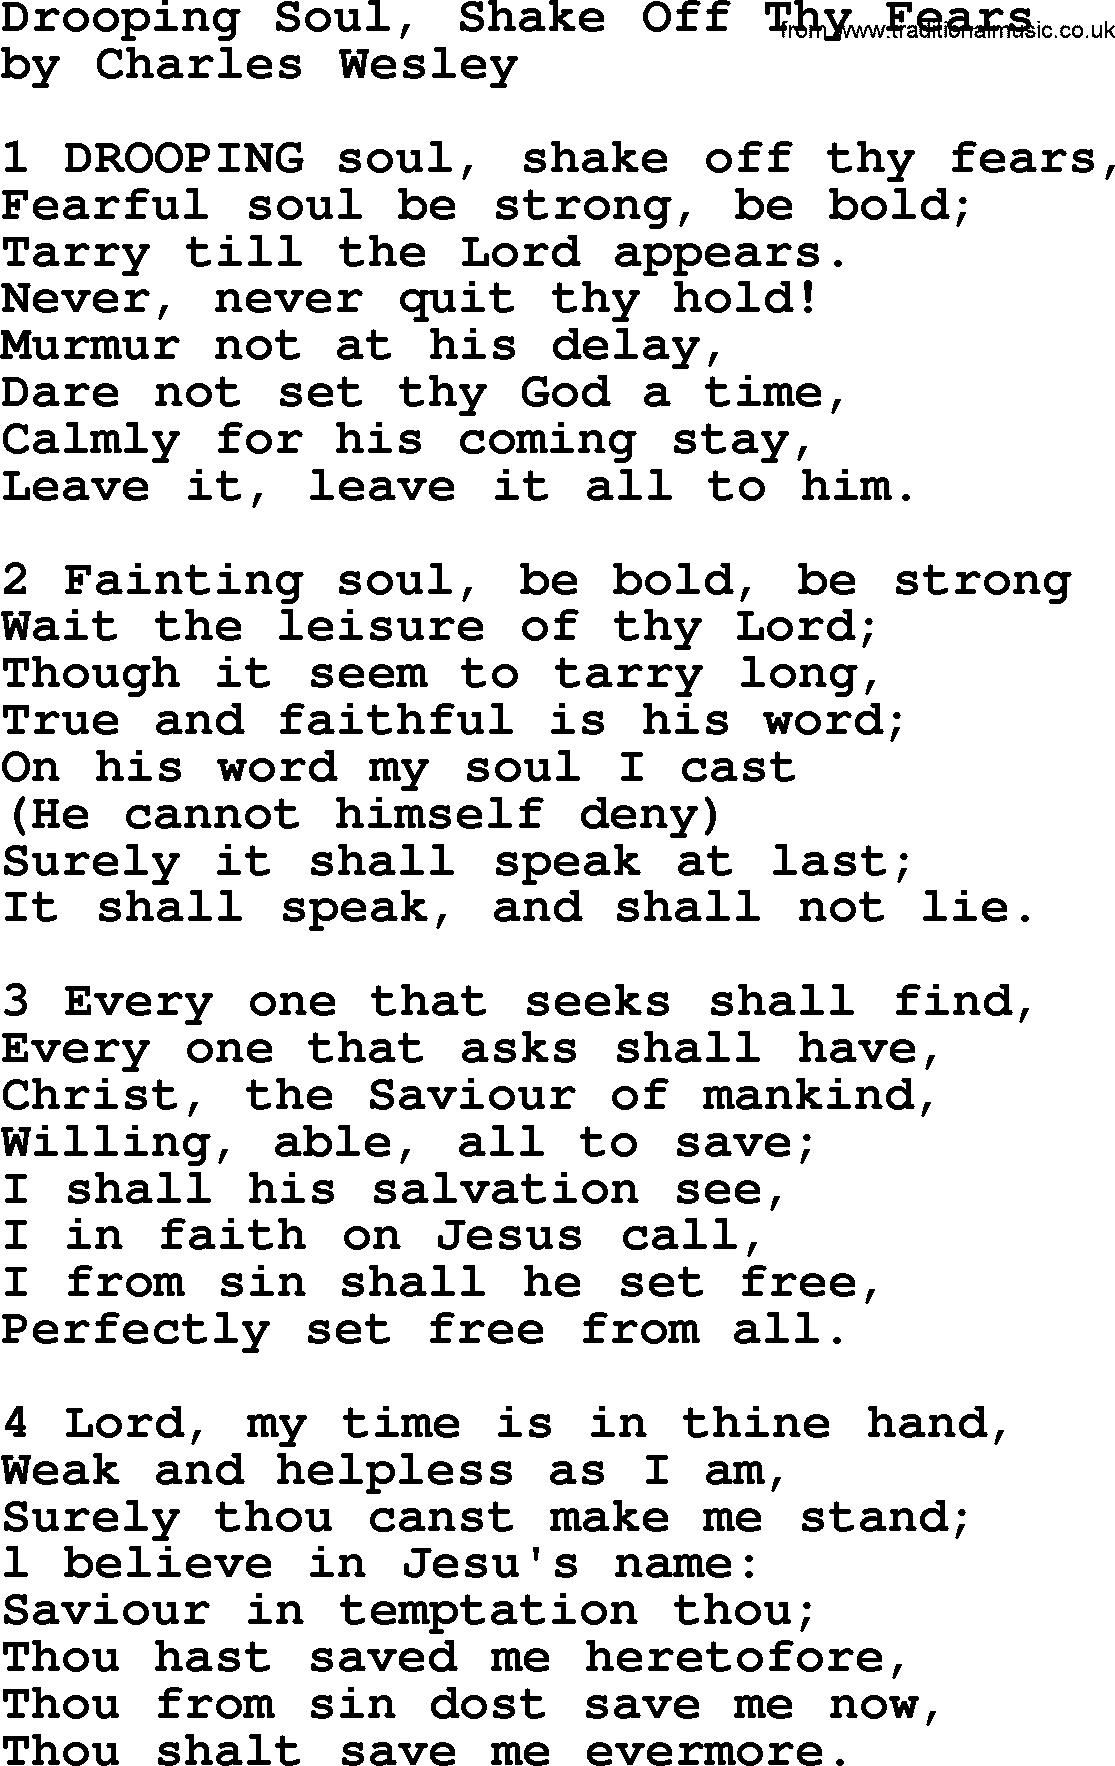 Charles Wesley hymn: Drooping Soul, Shake Off Thy Fears, lyrics